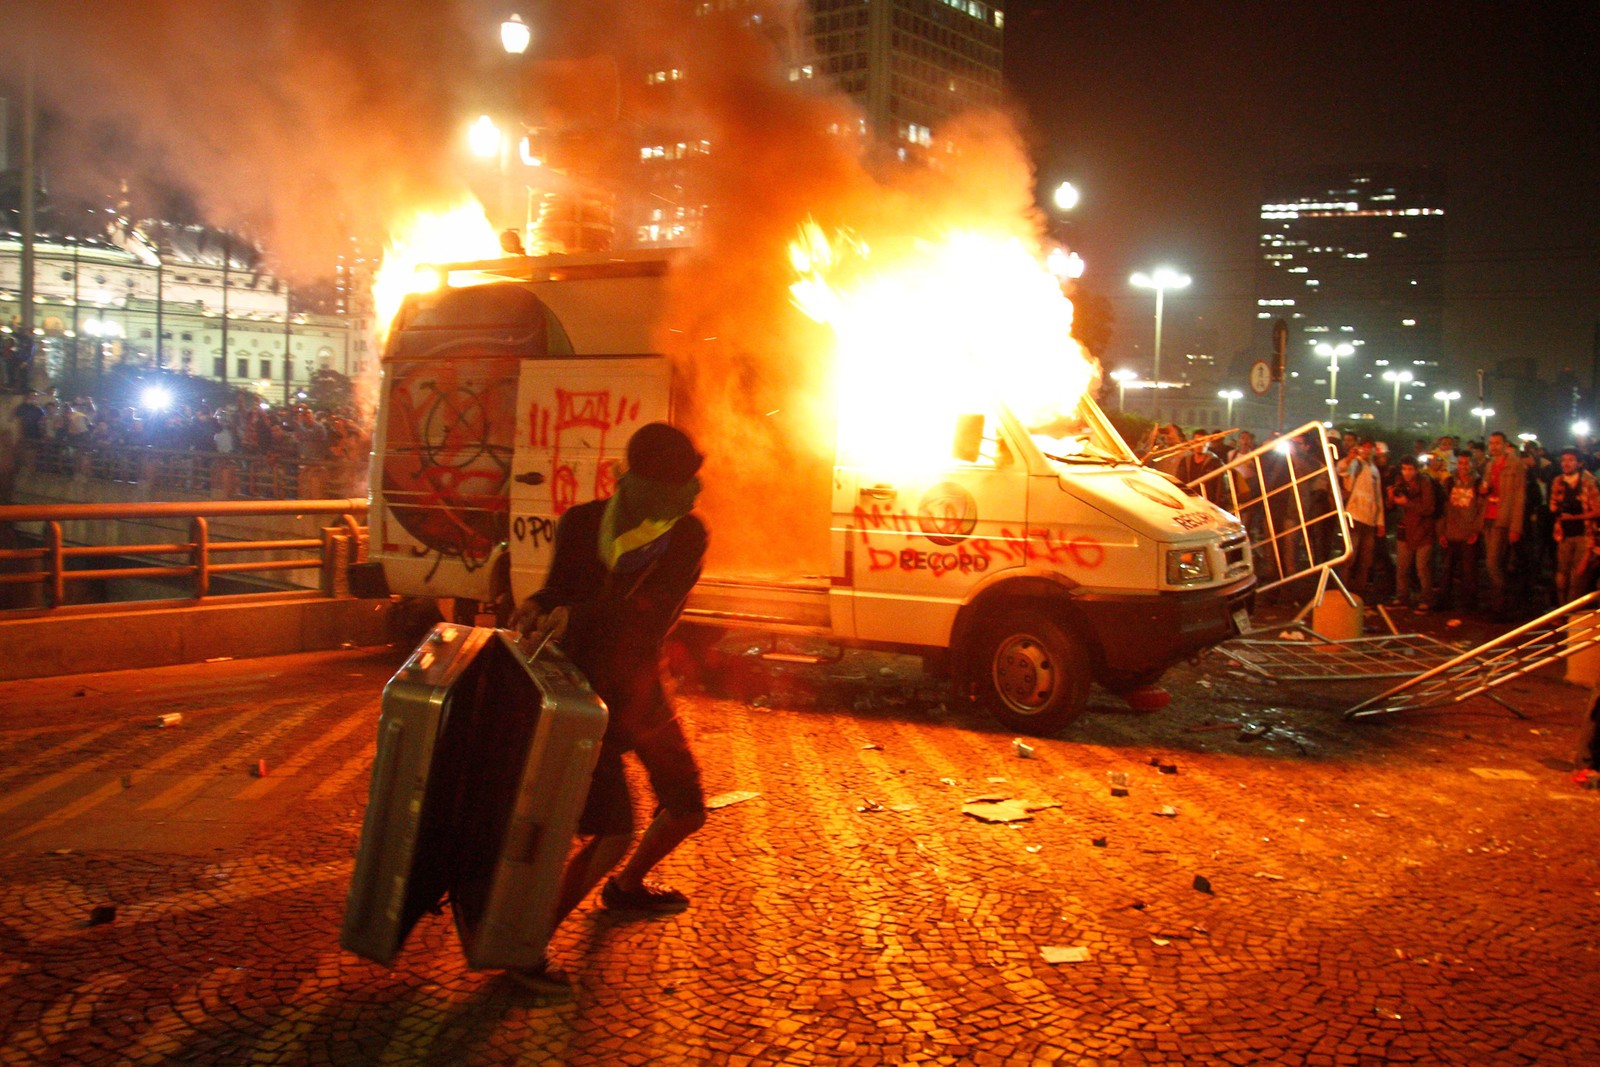 Manifestantes incendeiam carro da rede Record em frente à prefeitura durante protesto contra o aumento da tarifa de ônibus, em São Paulo, em 18 de junho de 2013 — Foto: ALE VIANNA - BRAZIL PHOTO PRESS